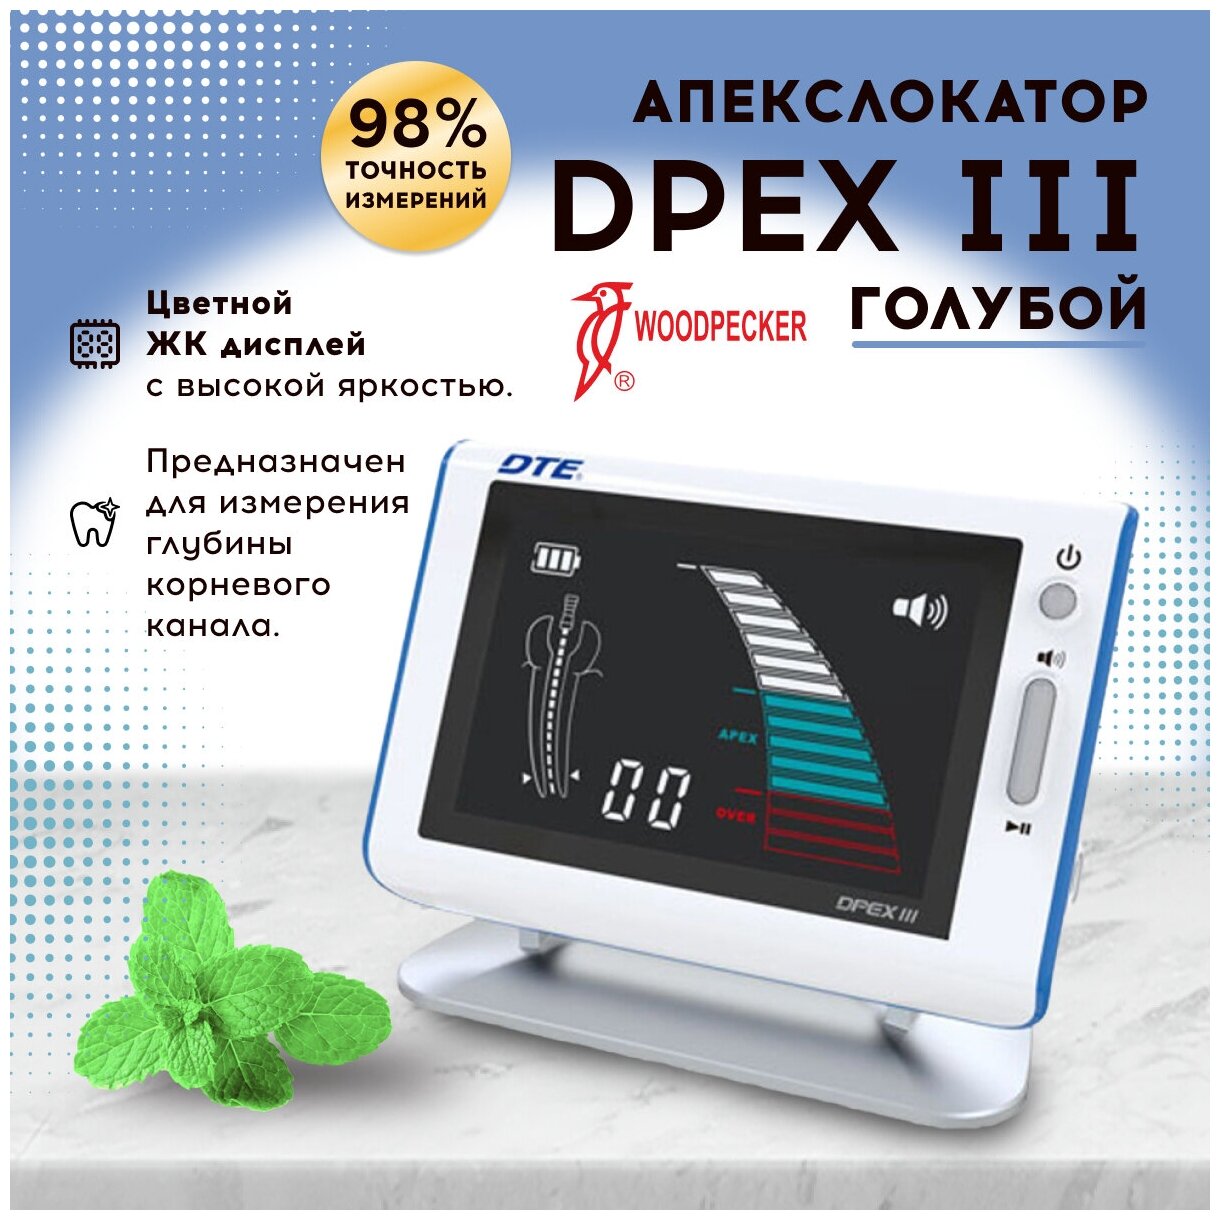 Апекслокатор электронно-цифровой Woodpecker DPEX III серии DTE повышенной точности, с цветным дисплеем